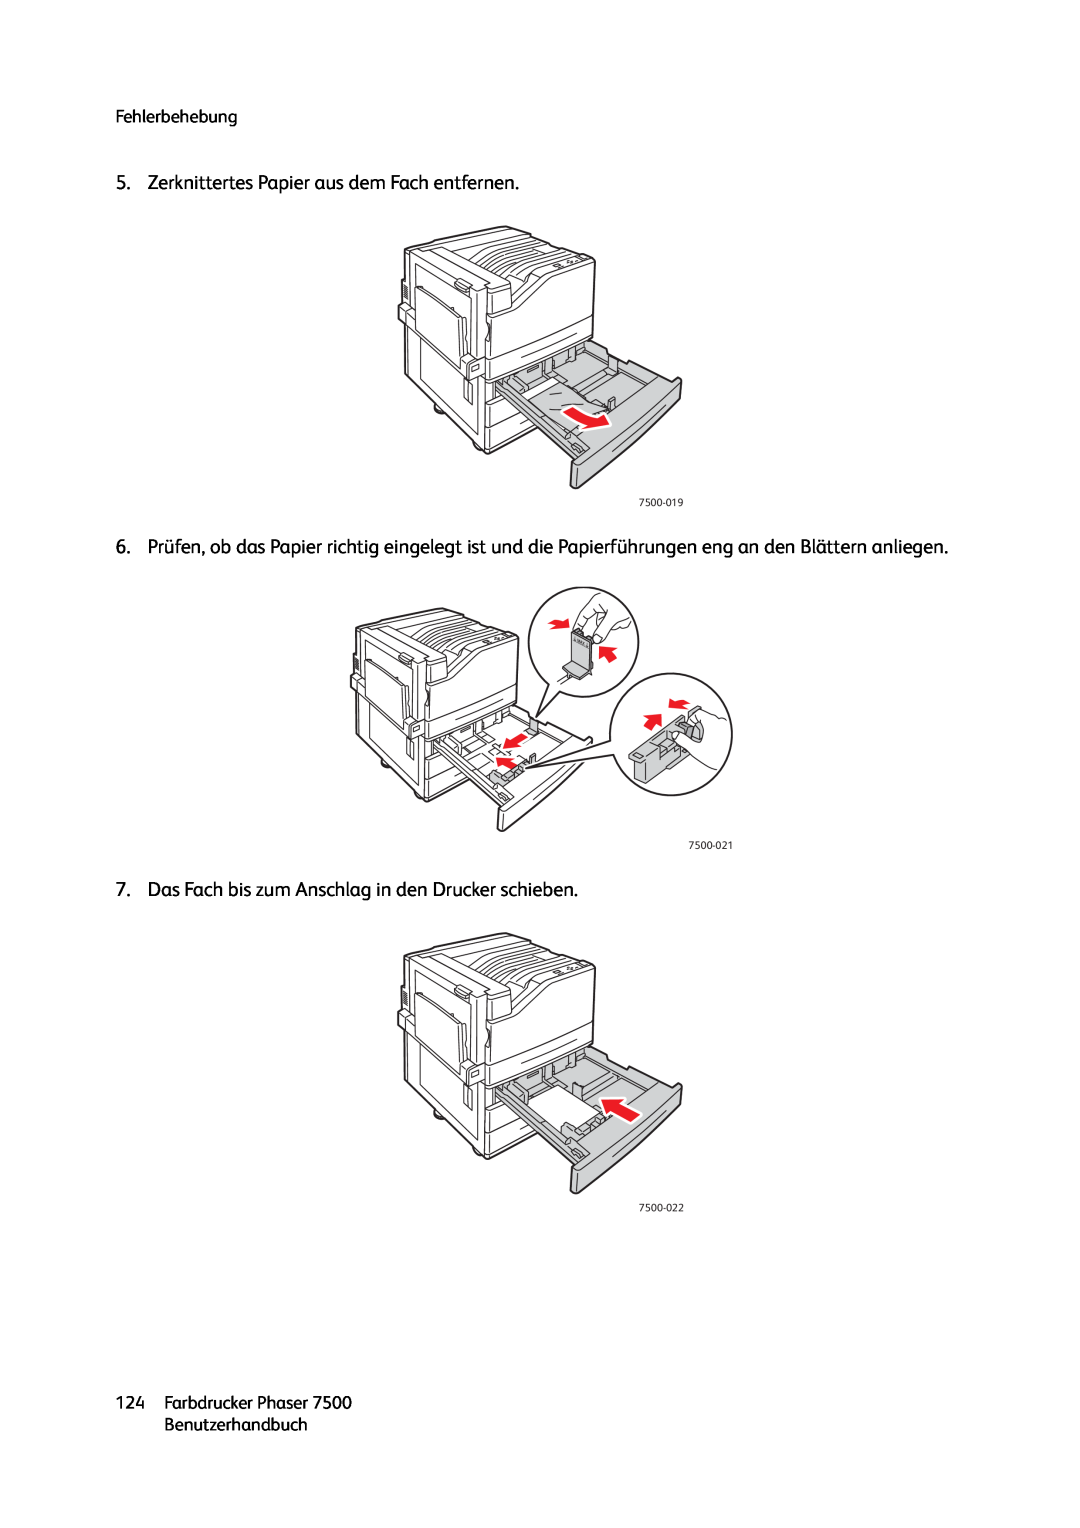 Xerox 7500 color printer manual Zerknittertes Papier aus dem Fach entfernen 